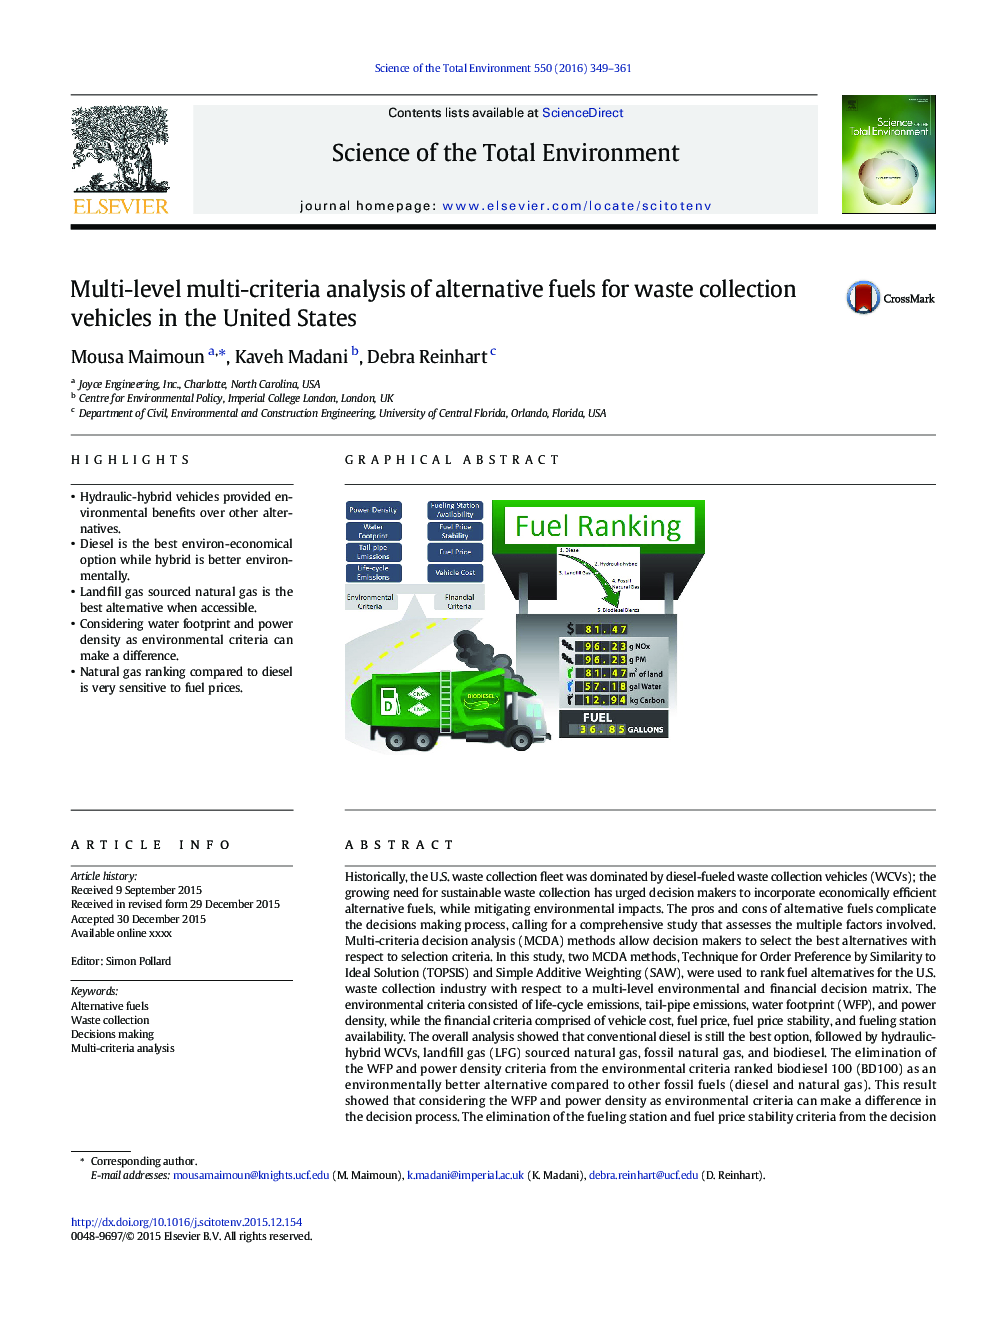 تجزیه و تحلیل چند معیاره چند مرحله ای از سوخت های جایگزین برای وسایل نقلیه جمع آوری زباله در ایالات متحده 